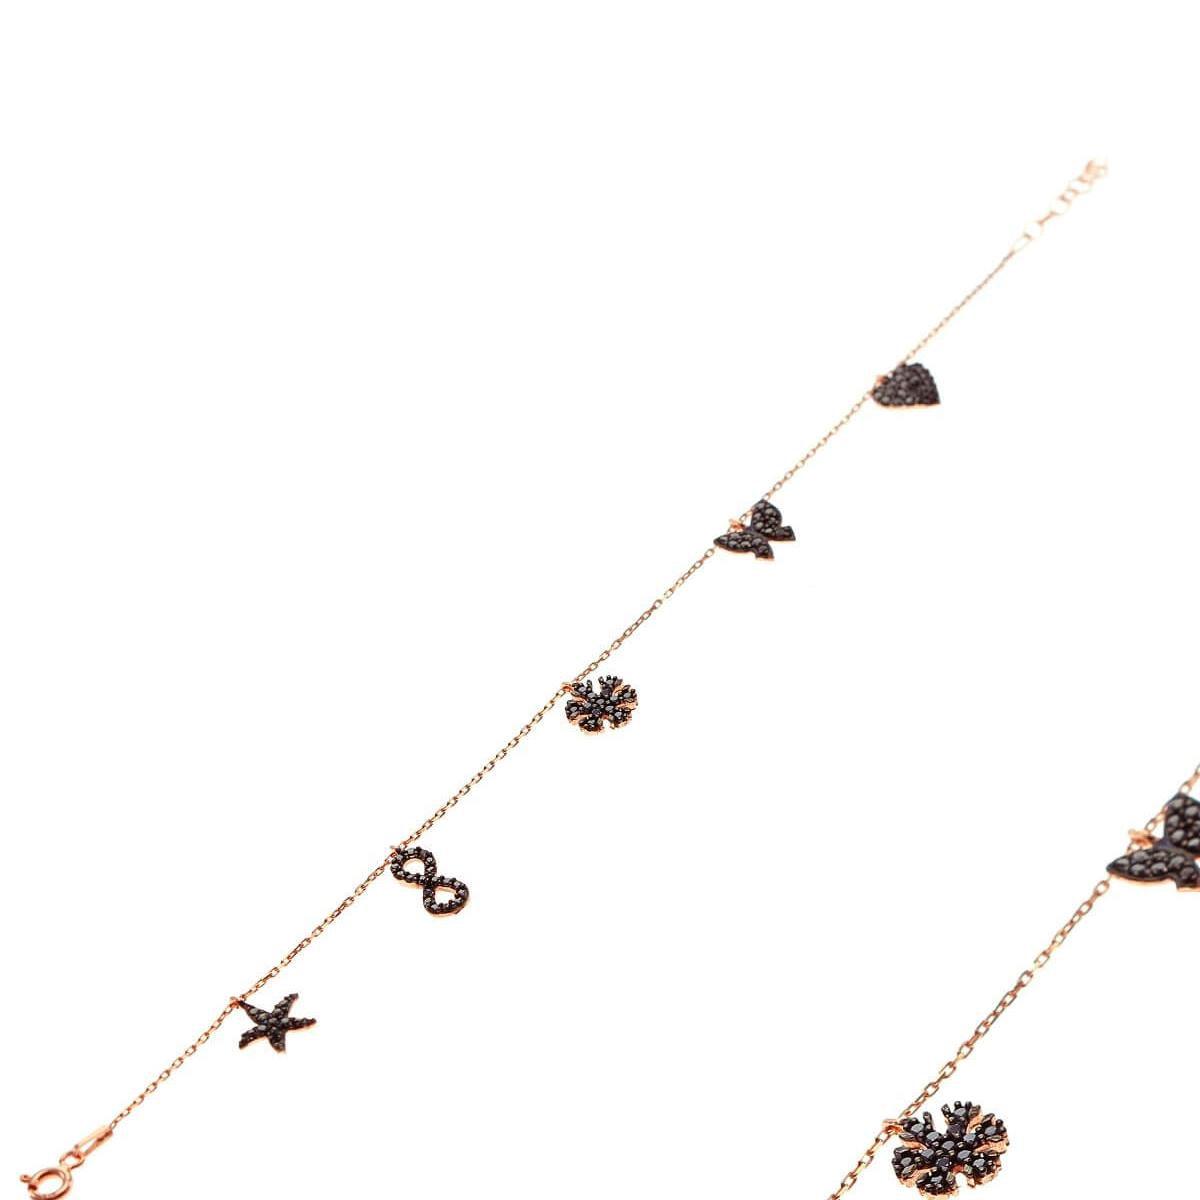 Black Zircon Luck Bracelet • Black Zircon Butterfly Bracelet - Trending Silver Gifts